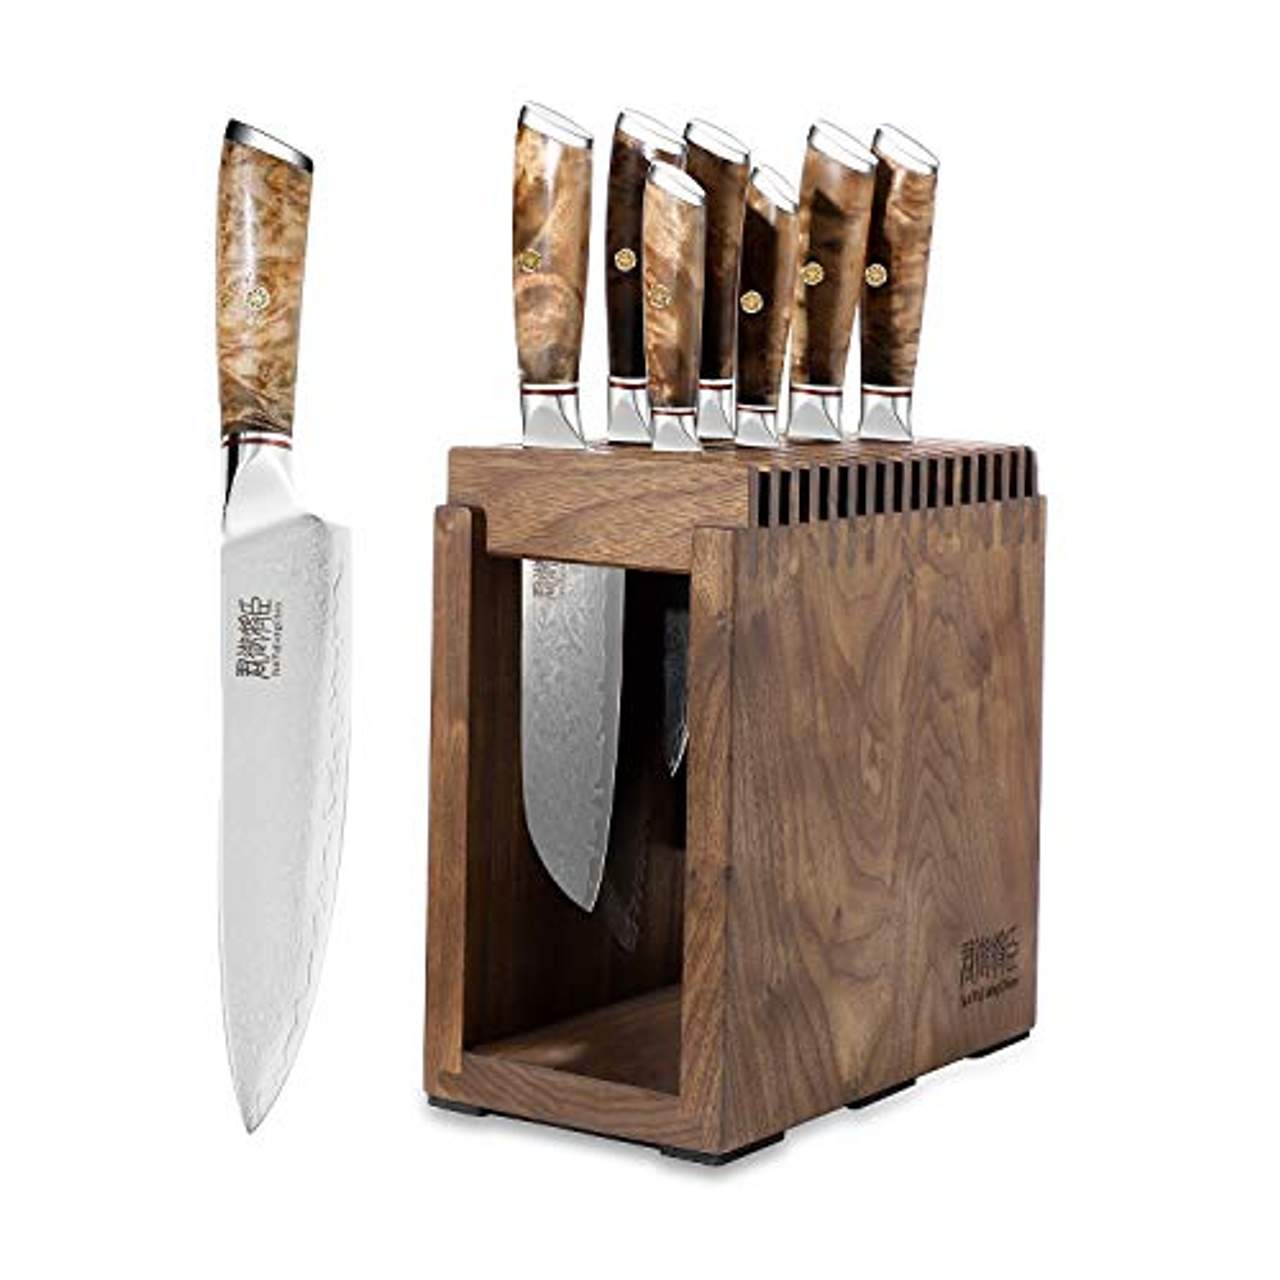 Profi Kochmesser Set ergonomischer Holzgriff Messerblock Set mit Holzblock 18-tlg Messerset aus rostfreier Edelstahl